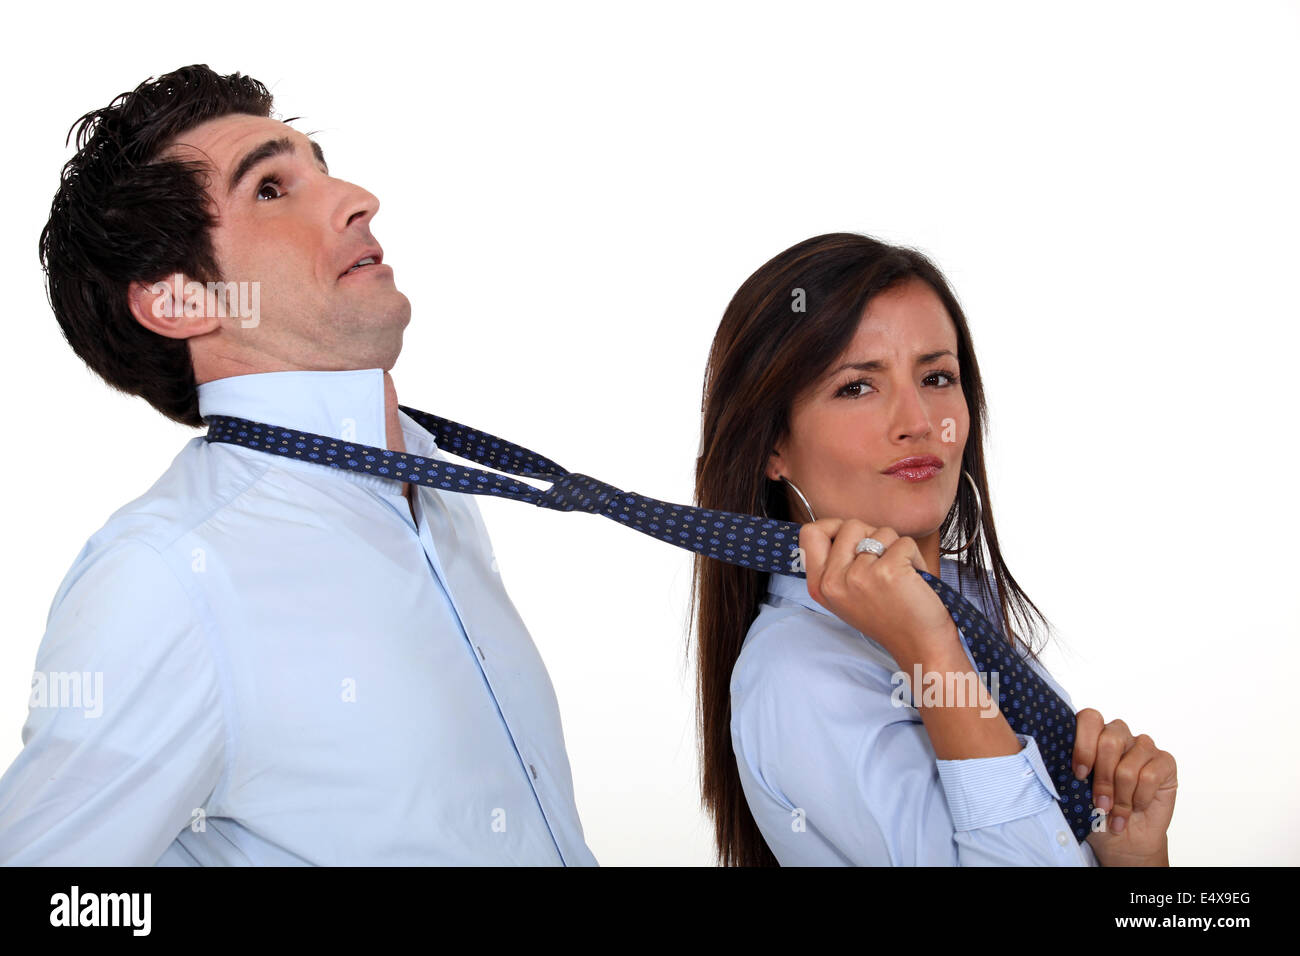 Woman pulling on boyfriend's tie Stock Photo